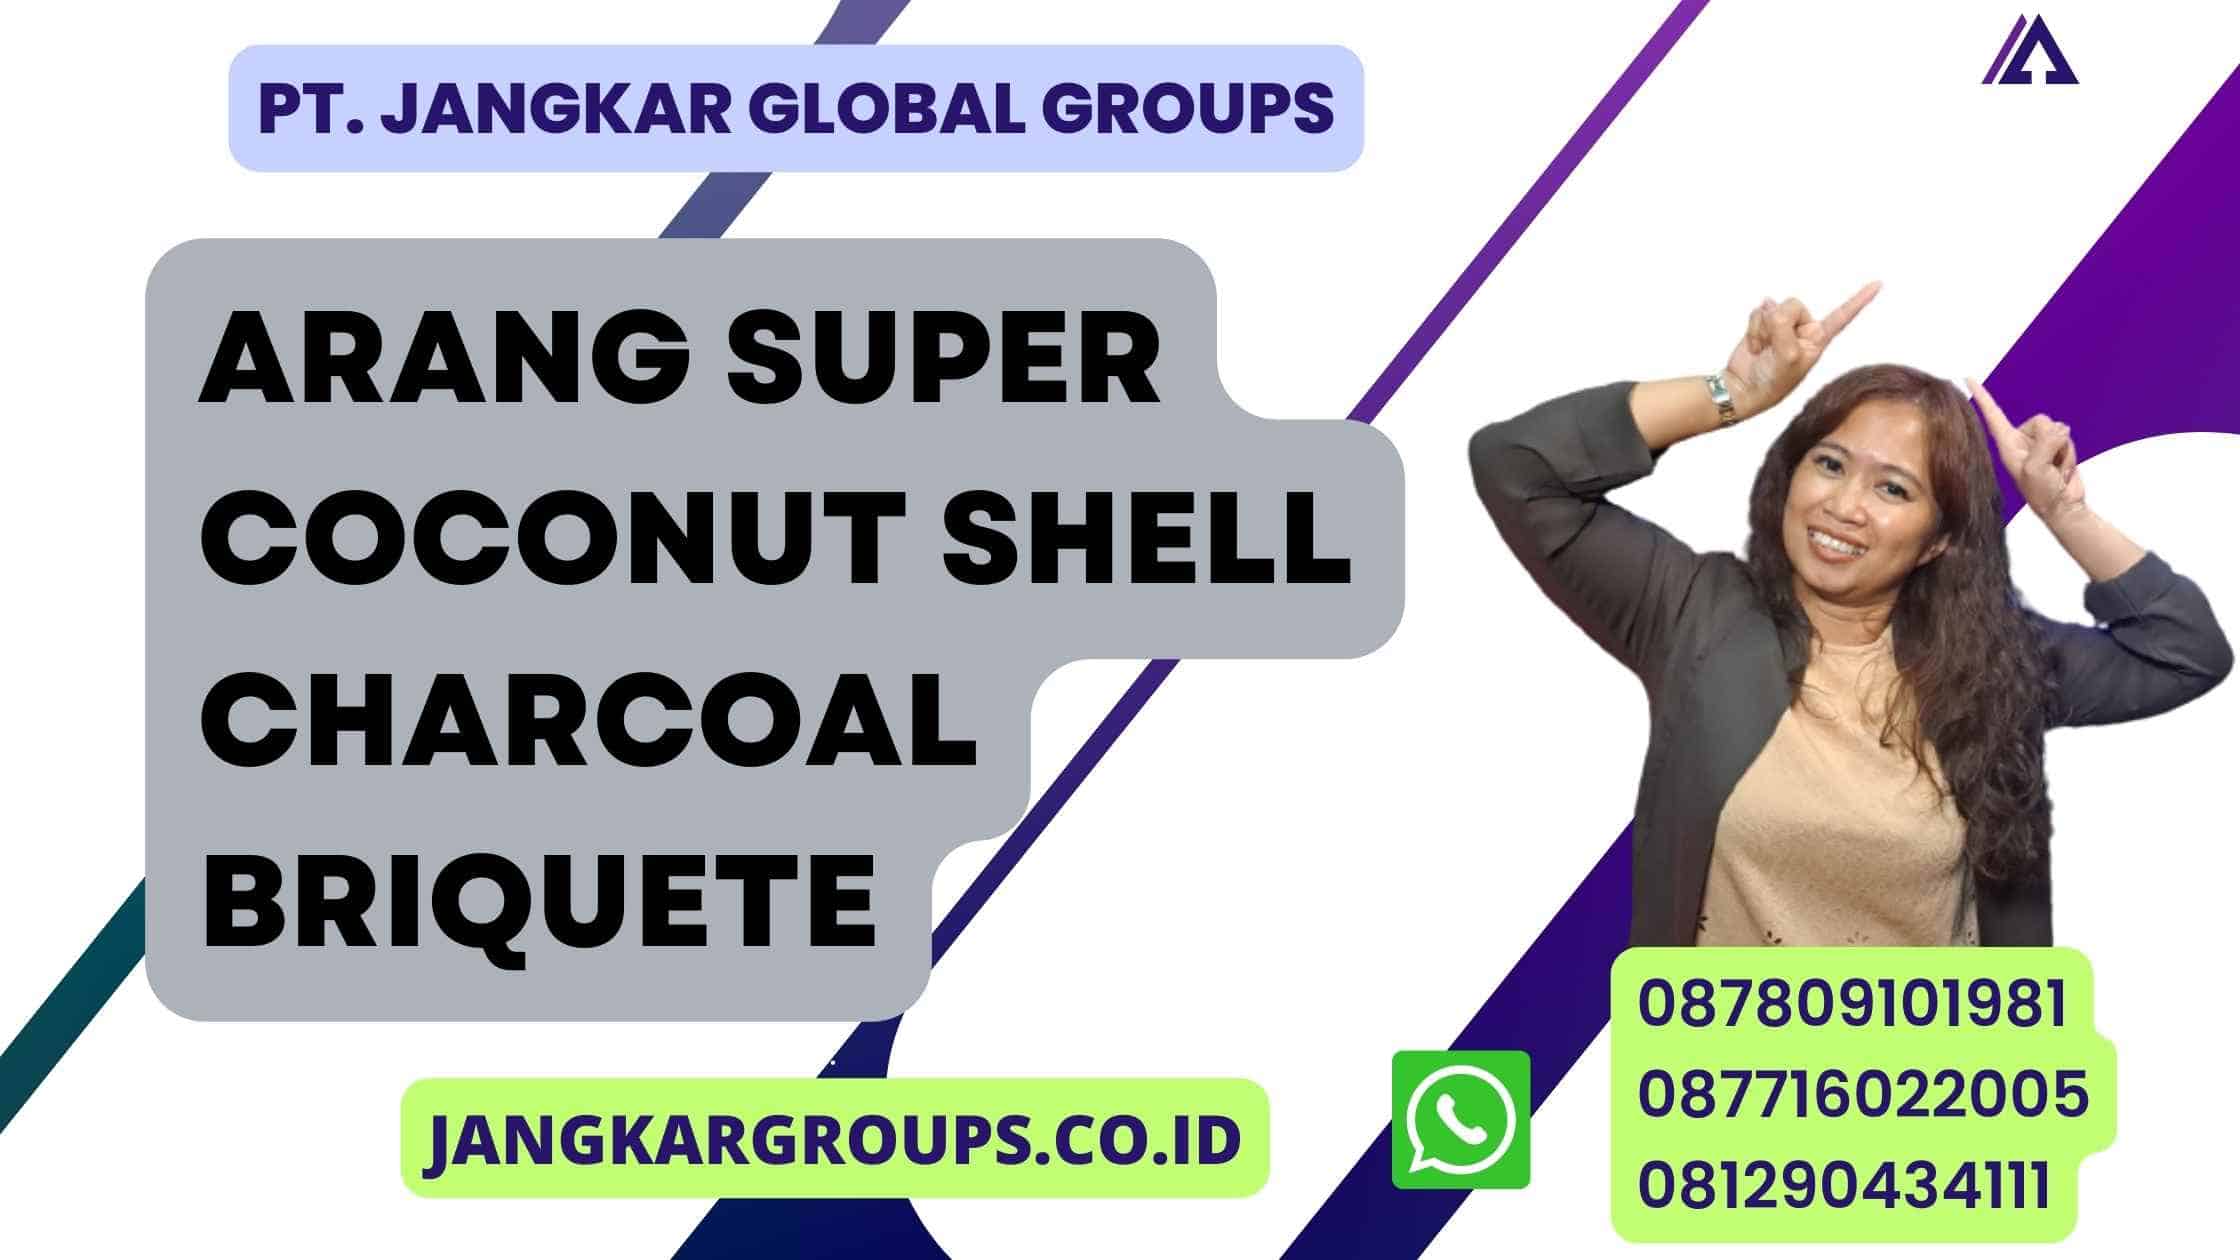 Arang Super Coconut Shell Charcoal Briquete